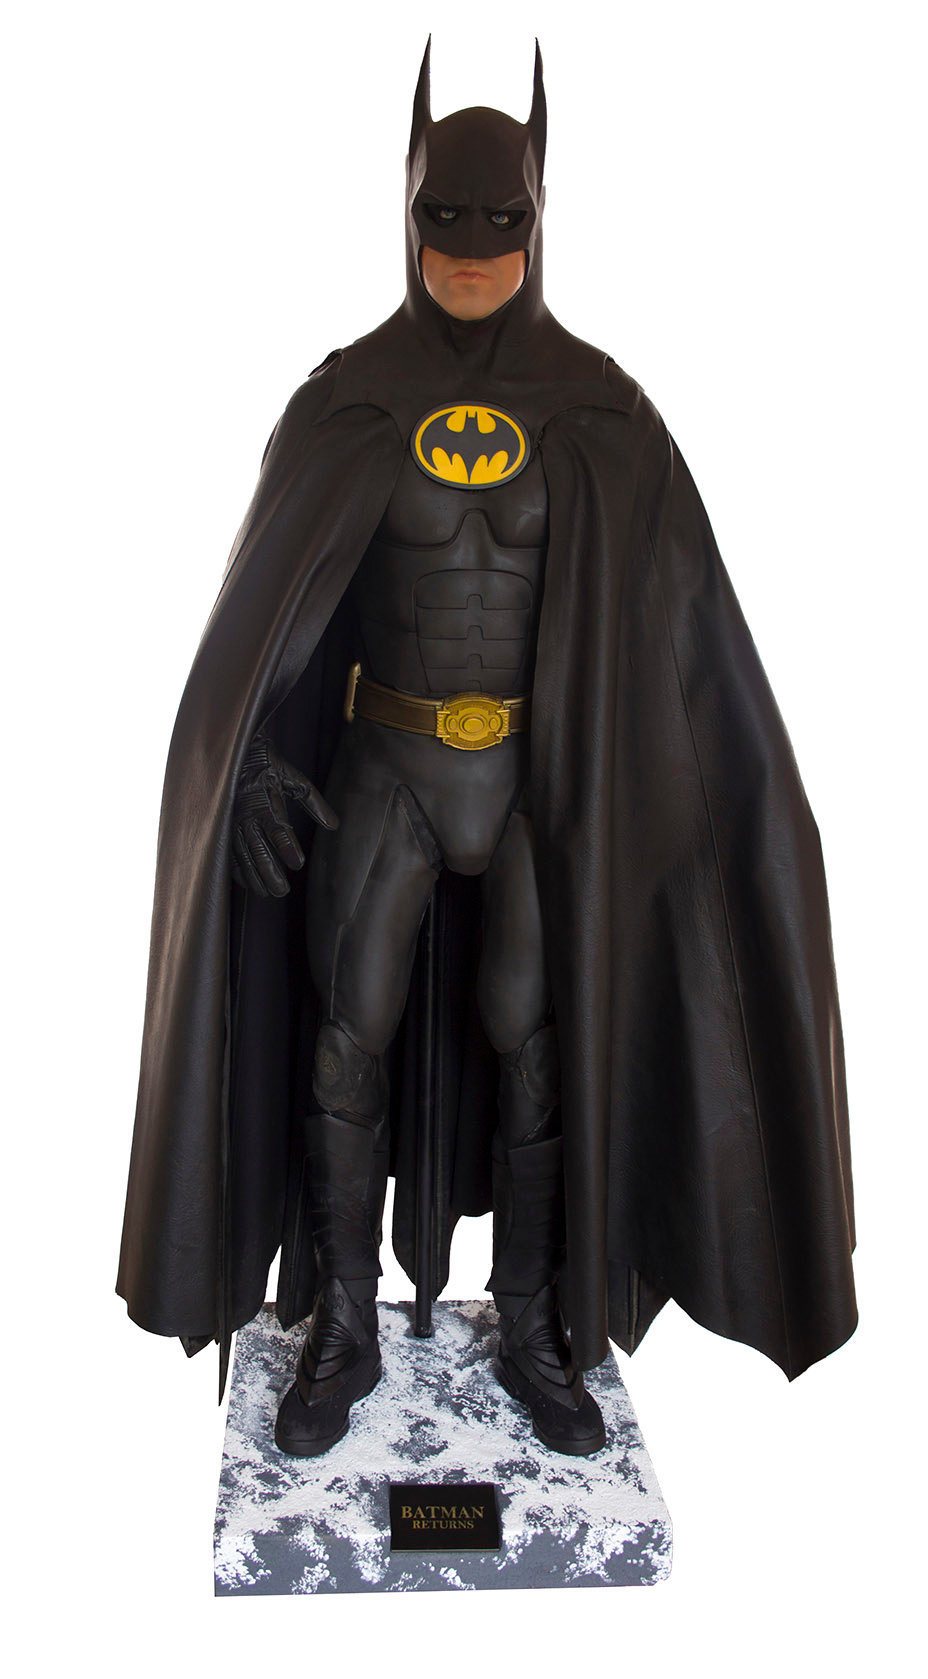 Манекен, изображающий Майкла Китона, с проданным костюмом на нем